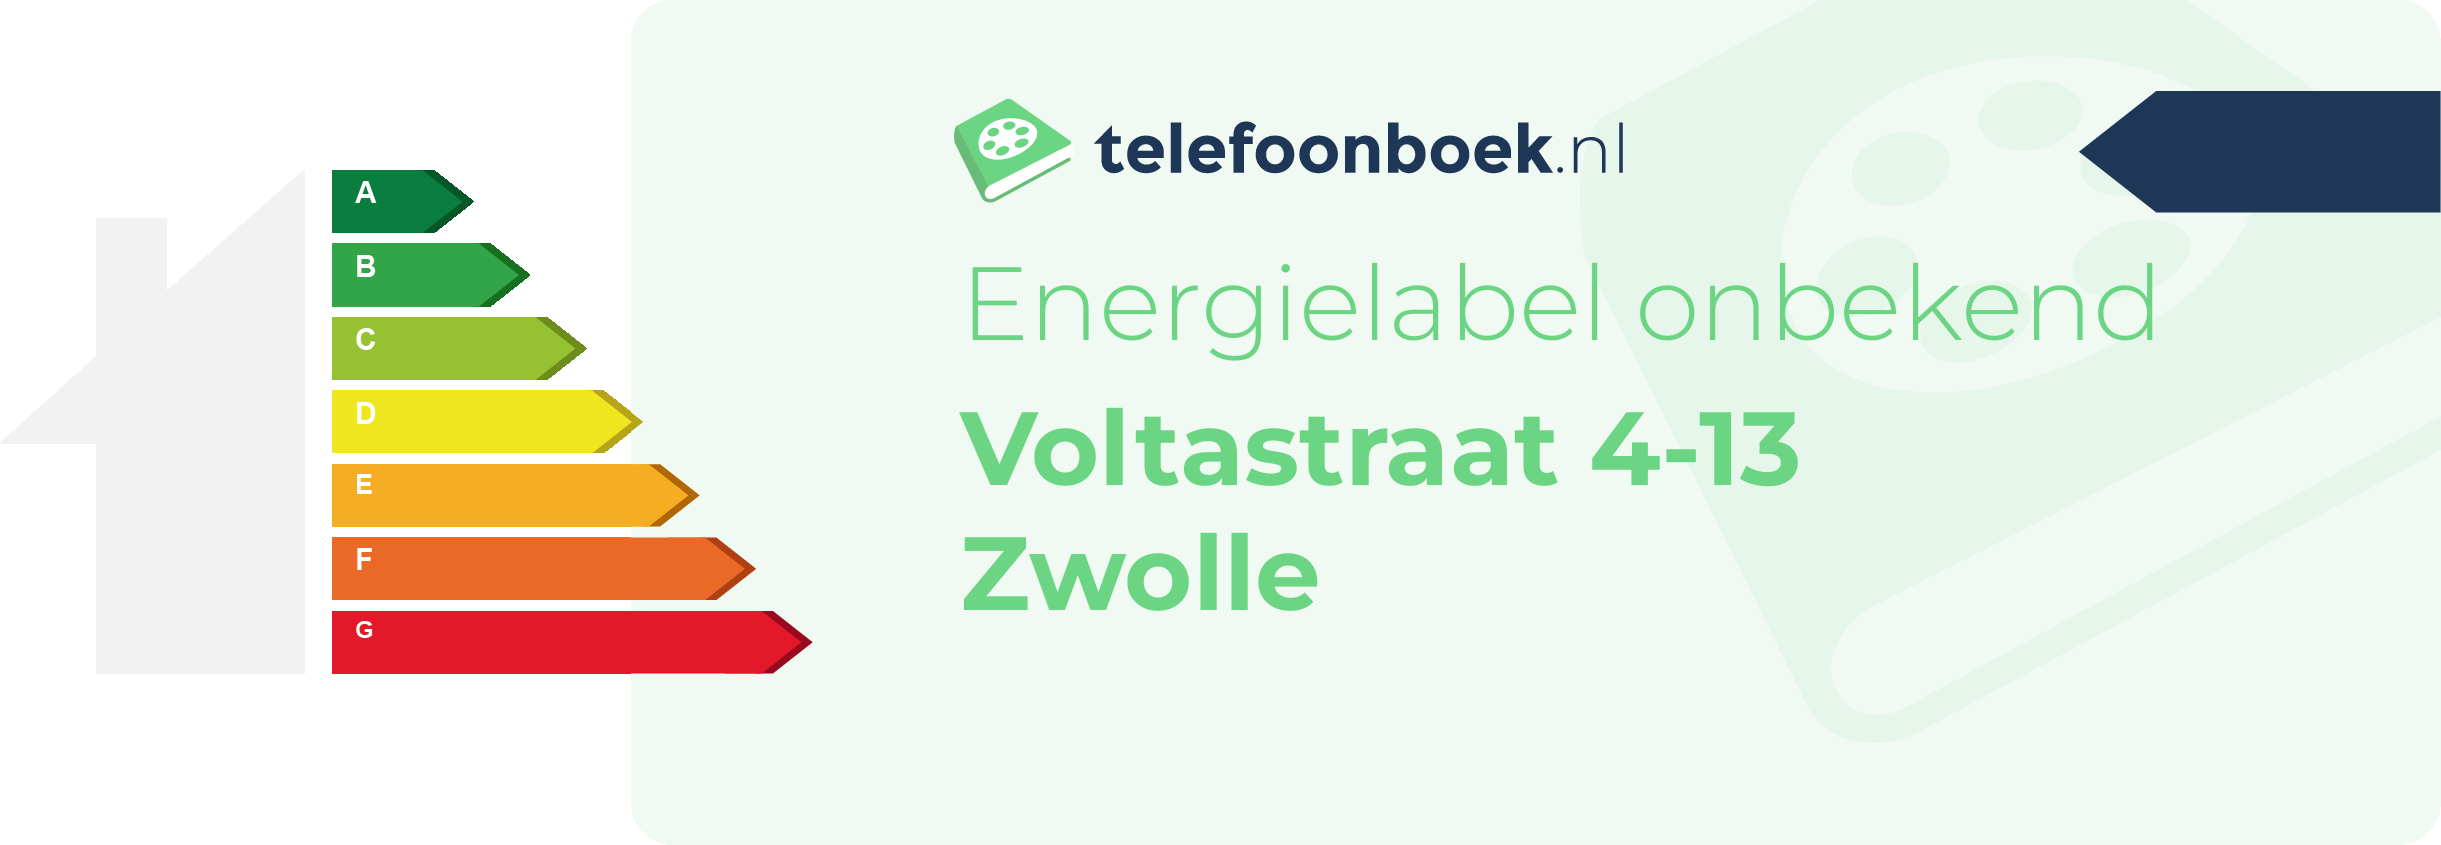 Energielabel Voltastraat 4-13 Zwolle